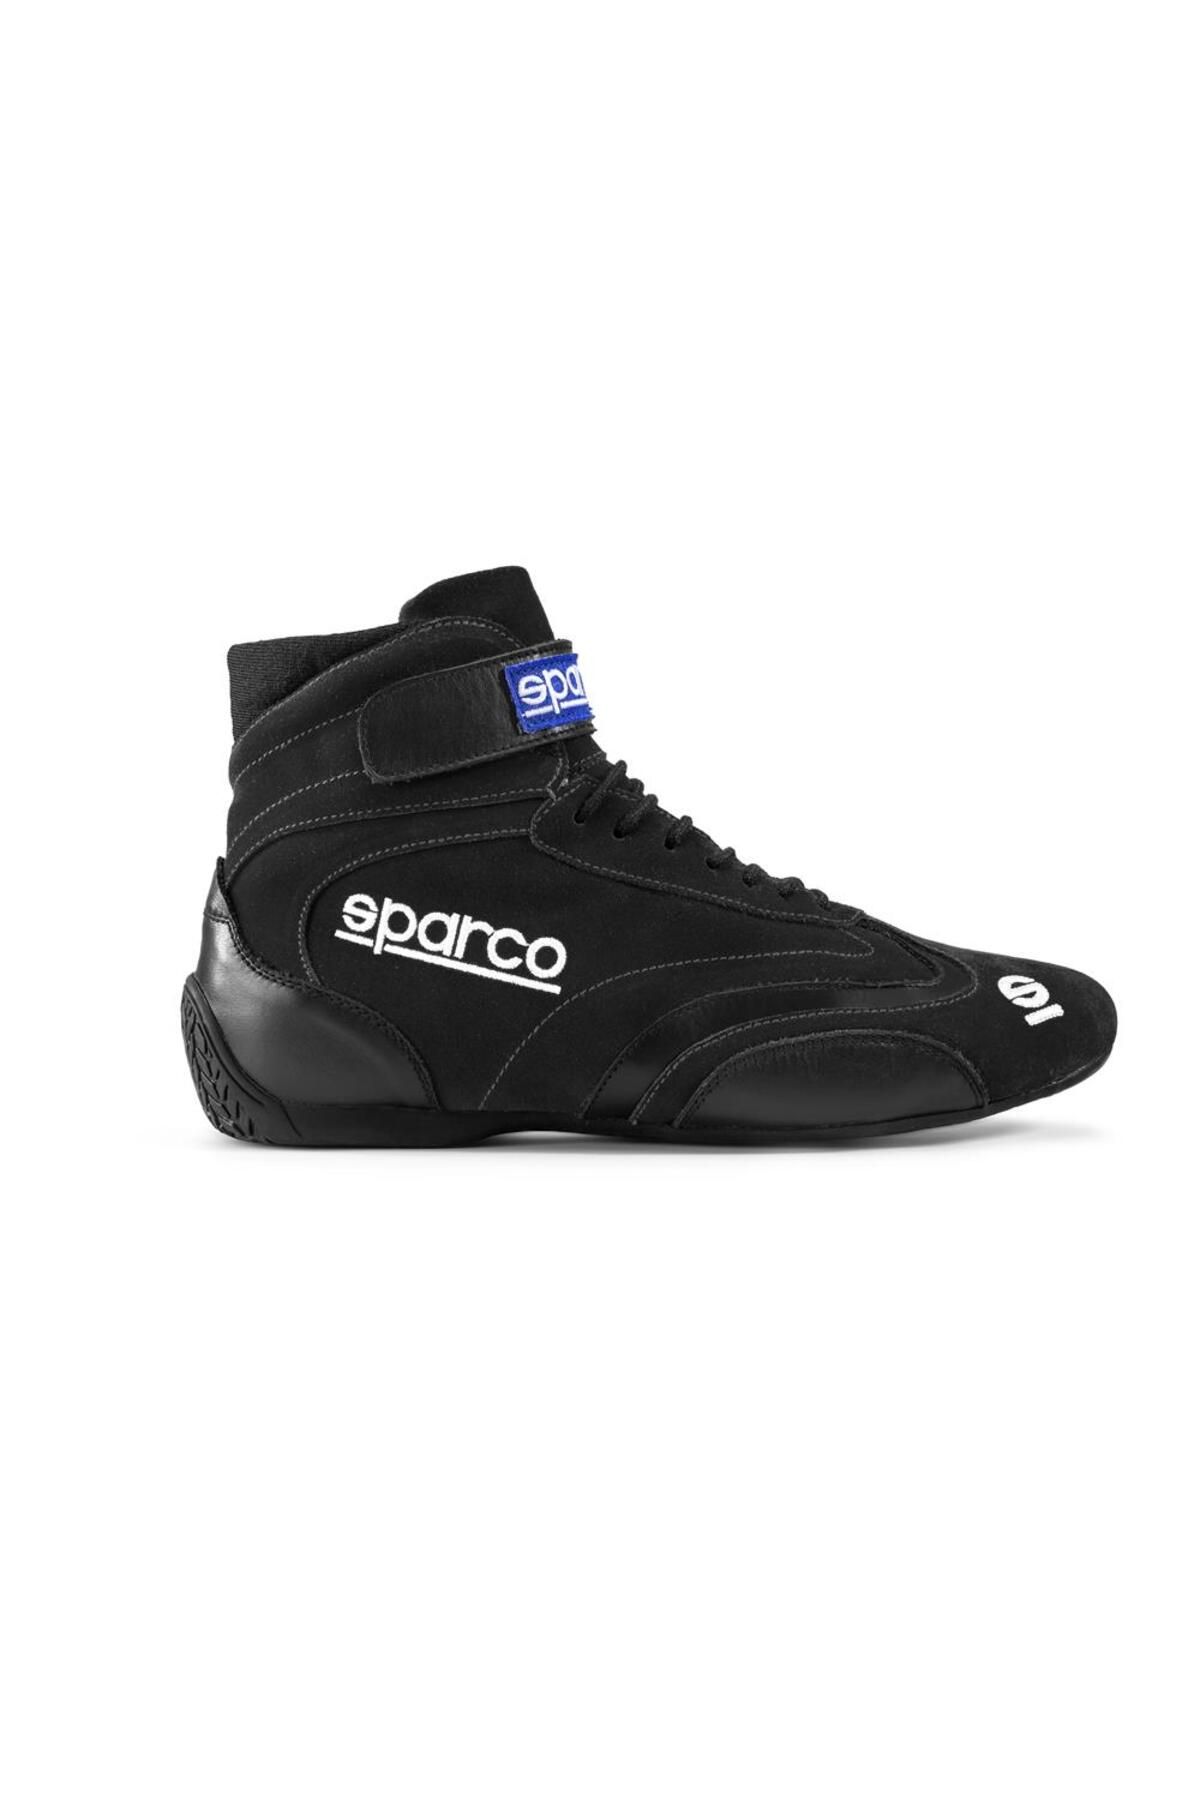 Sparco Top Yarış Ayakkabısı Fia Onaylı Siyah 40 Numara